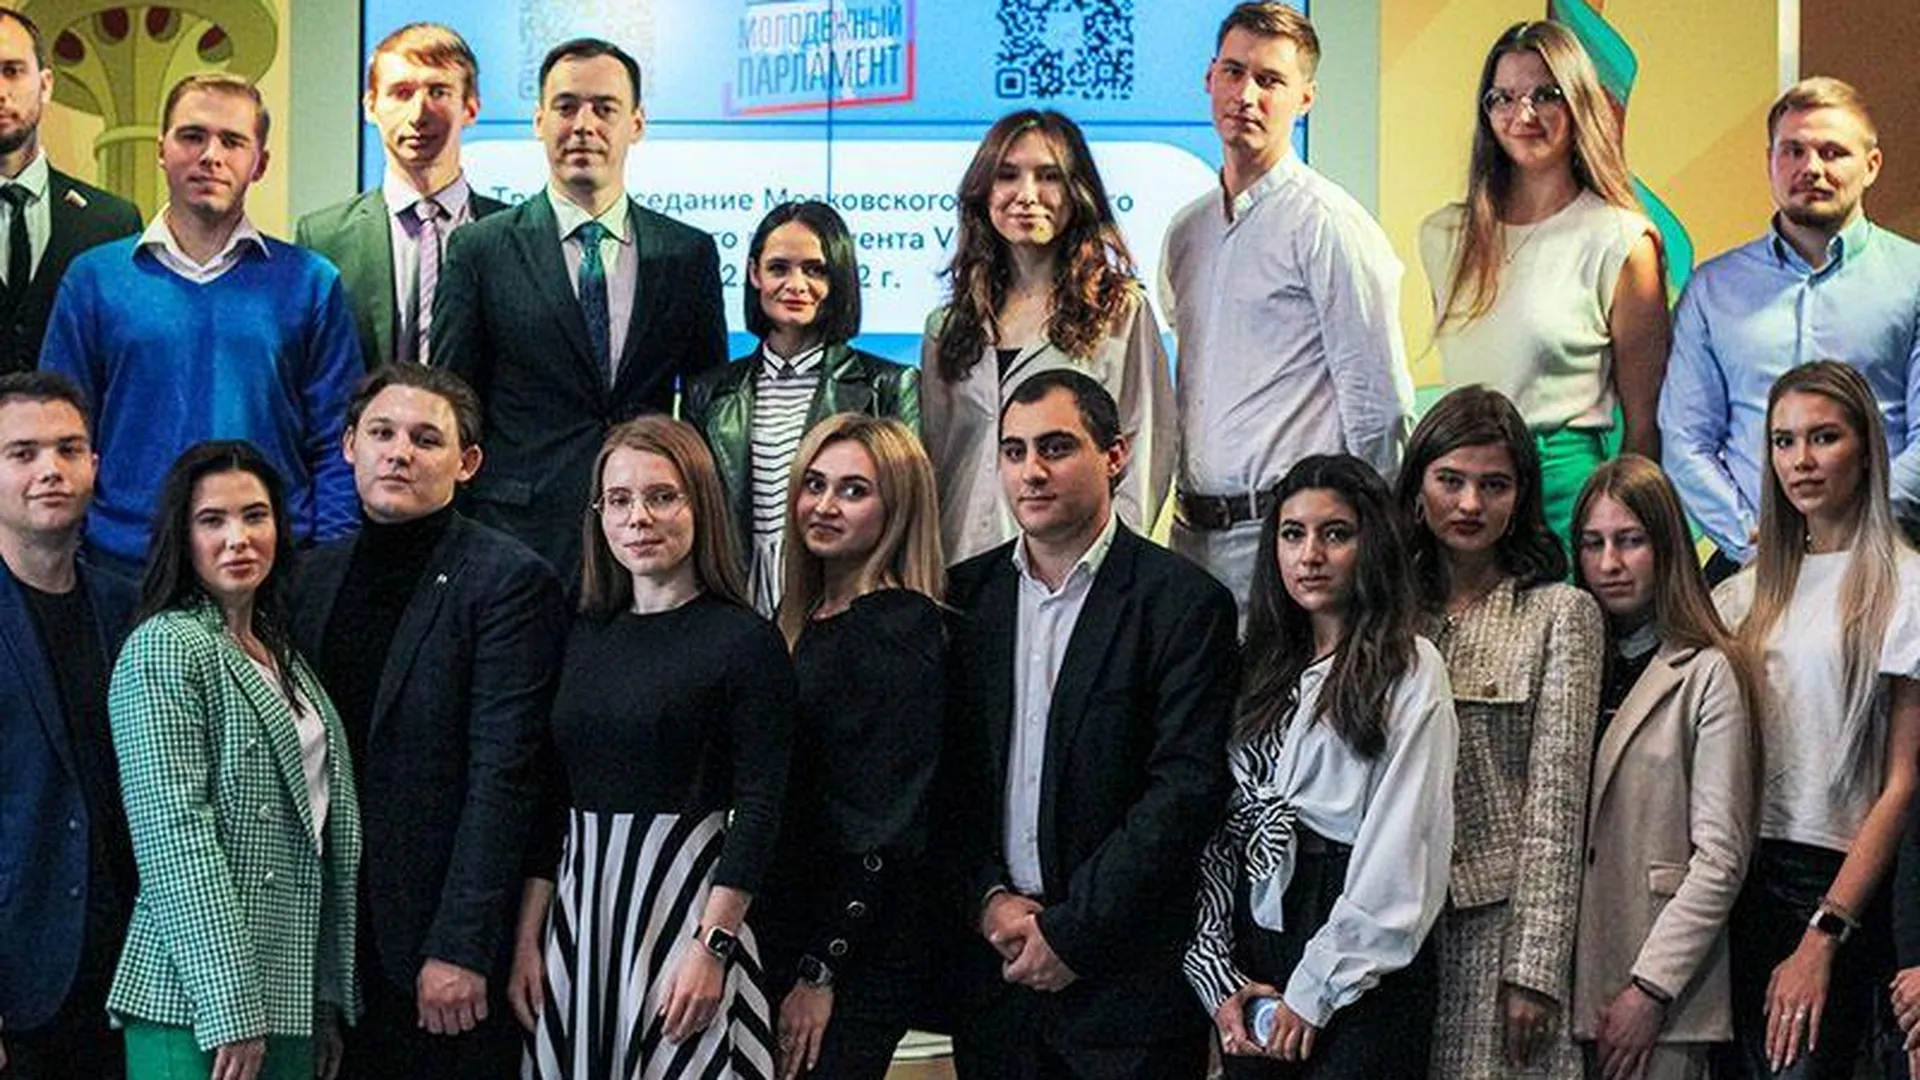 Пресс-служба Молодежного парламента Московской области